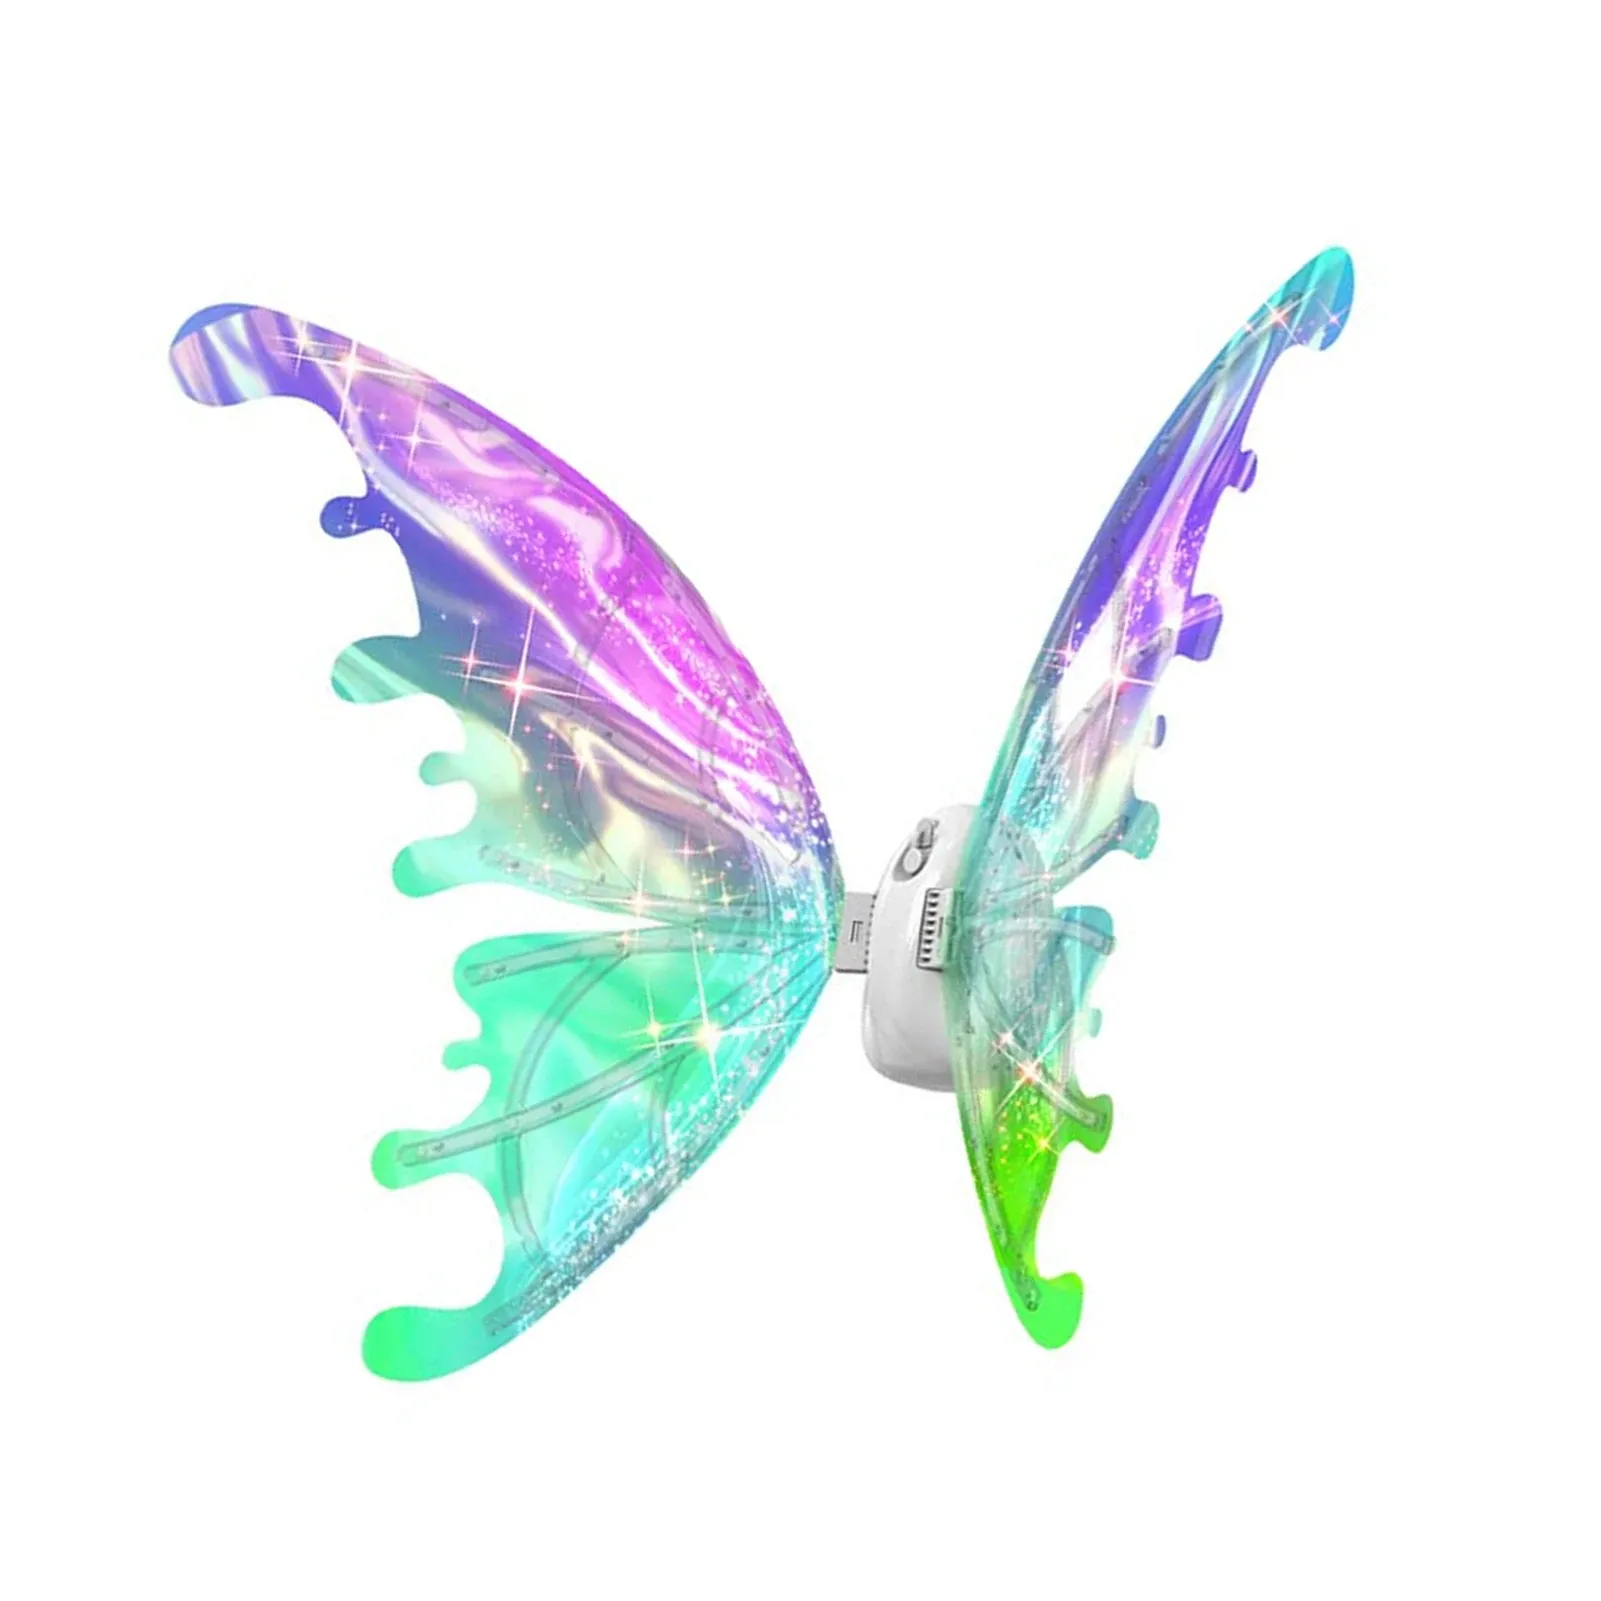 Elf kanatları kostüm aksesuarı Light Up kelebek kanatları kız kadınlar için parlayan kelebek kanatları çocuklar için